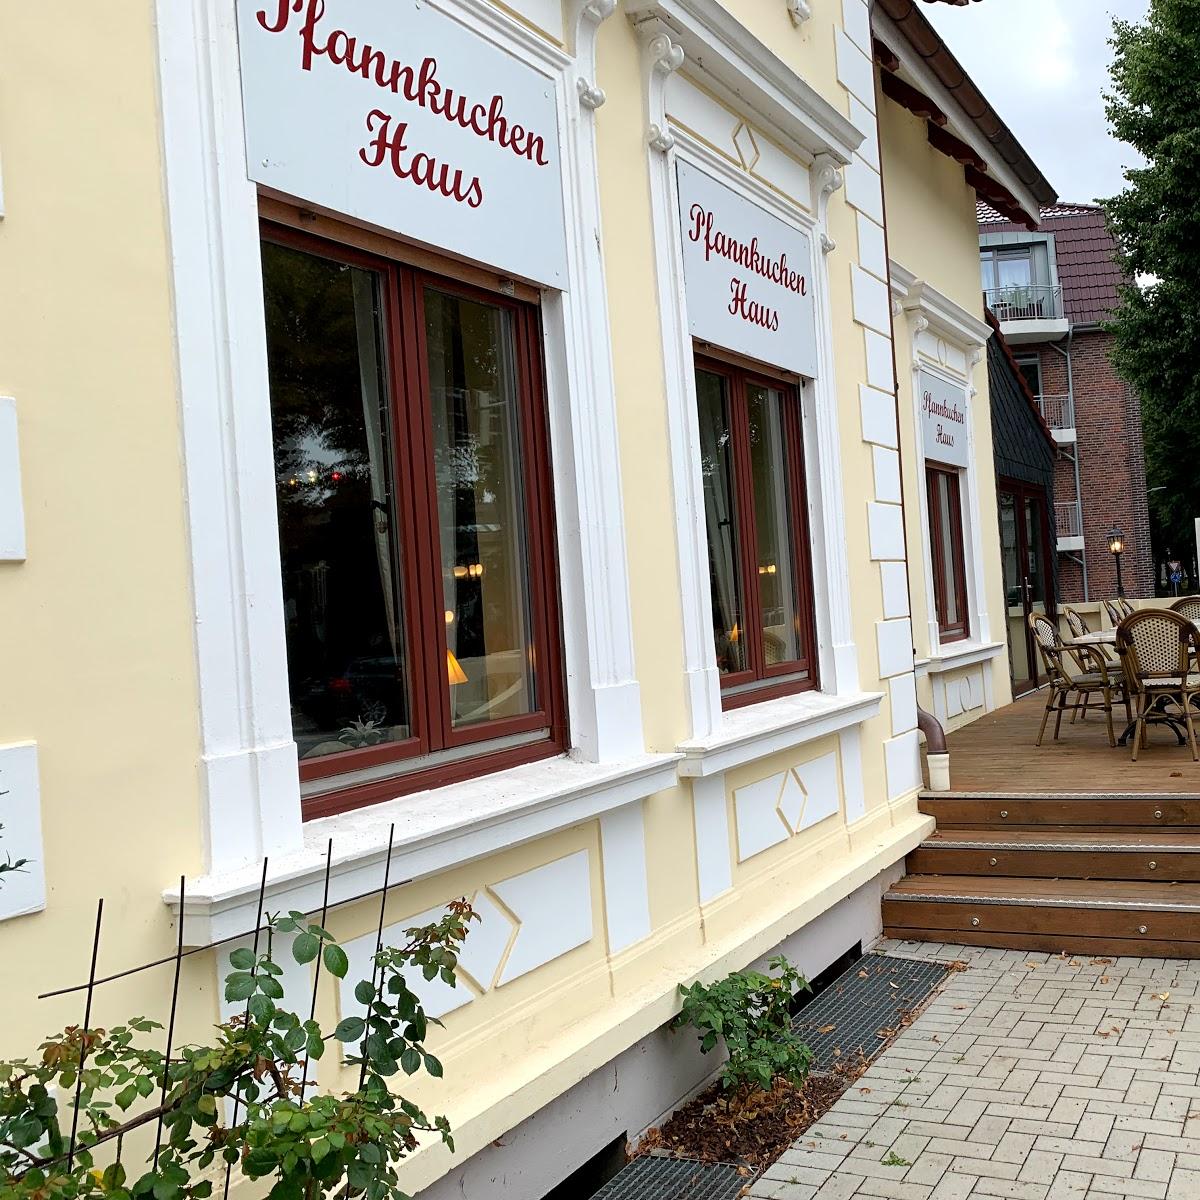 Restaurant "Pfannkuchenhaus" in  Fehmarn